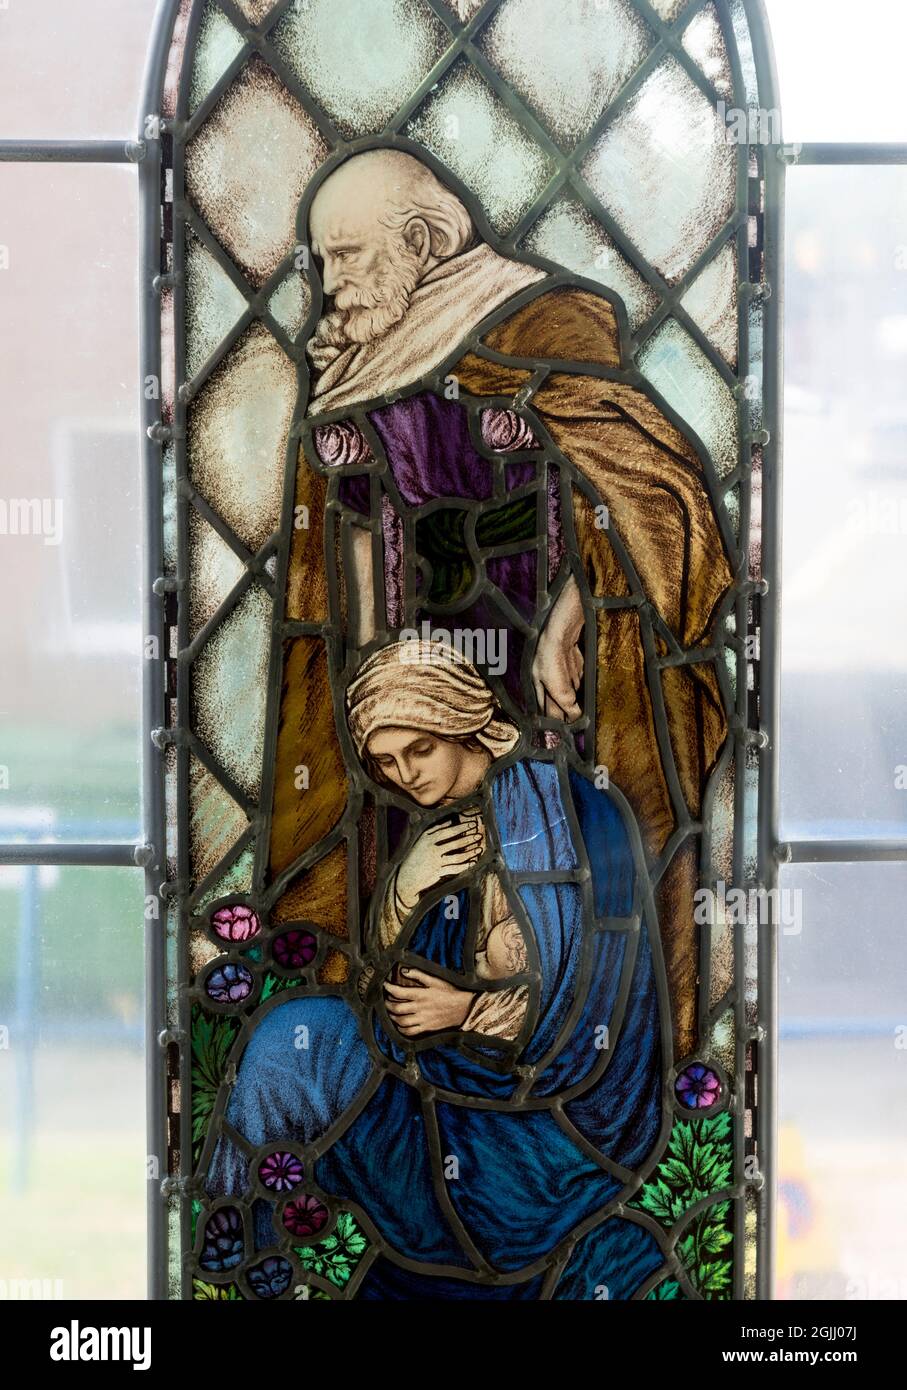 Panneau de vitraux de Boaz et Ruth, Église de la Sainte Trinité, Hinckley, Leicestershire, Angleterre, ROYAUME-UNI Banque D'Images